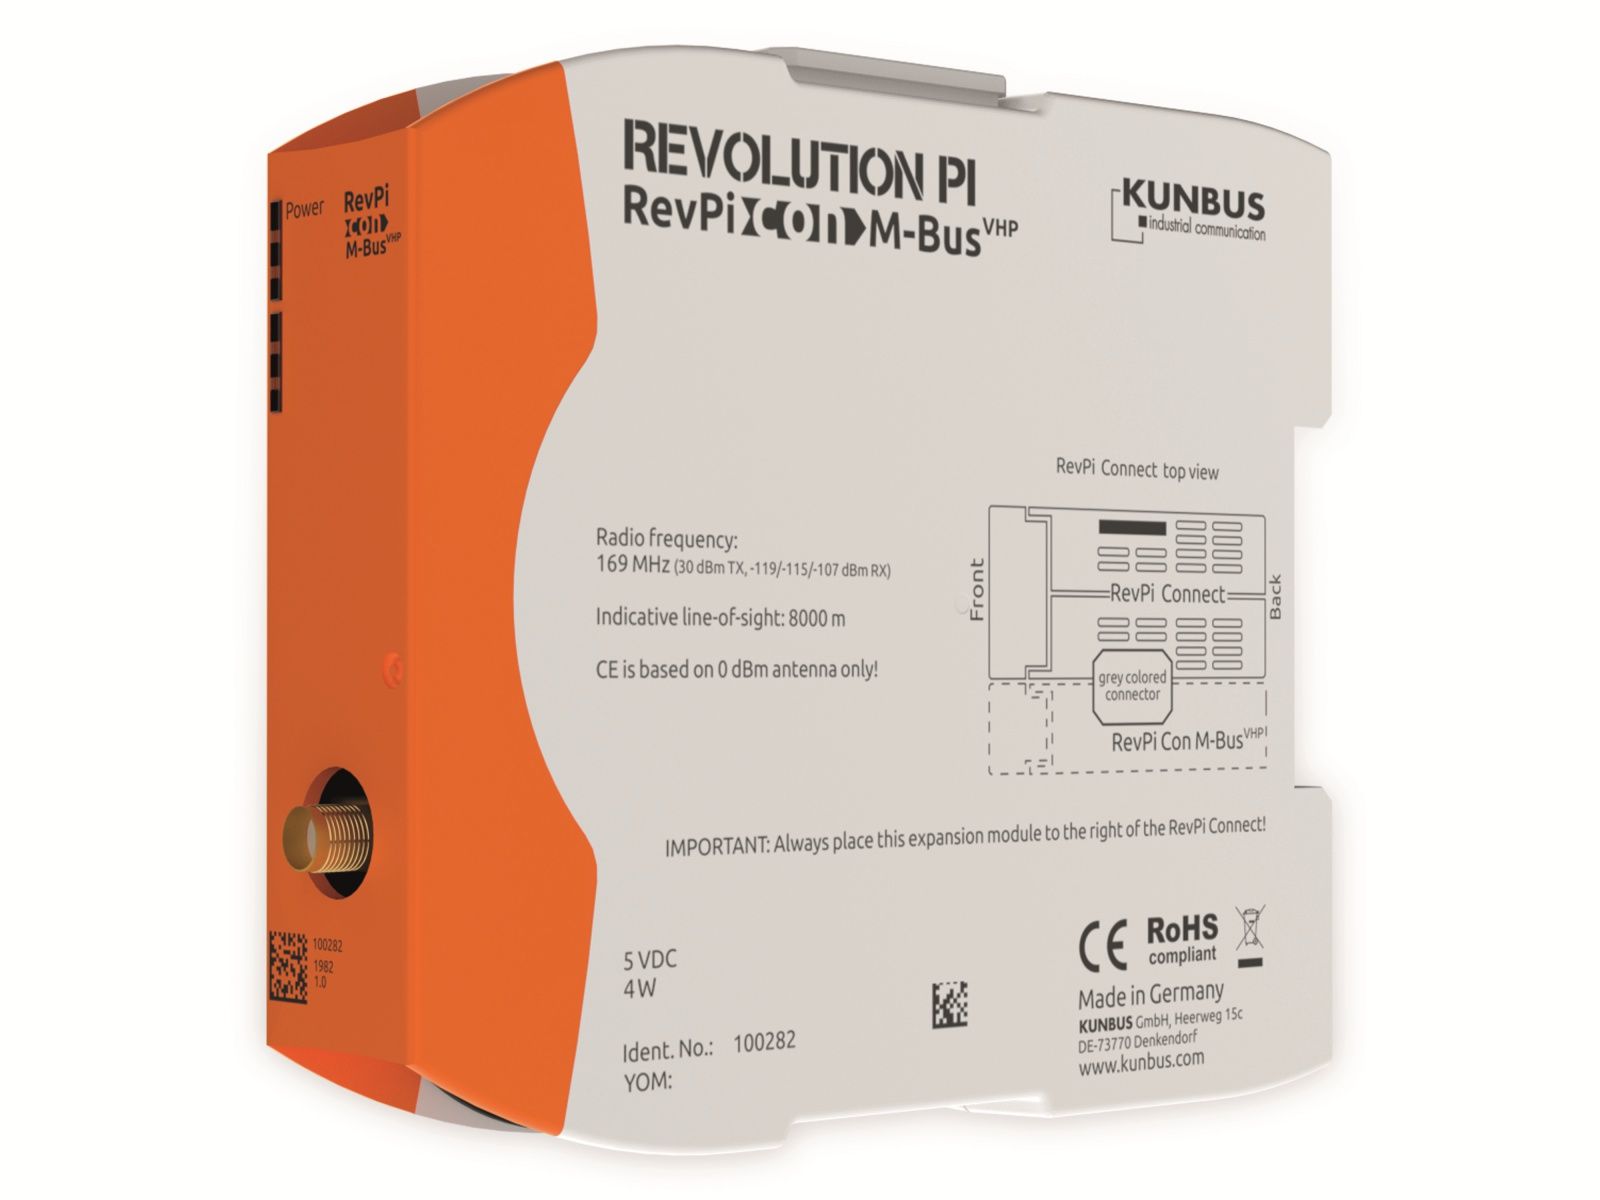 KUNBUS Revolution PI Erweiterungsmodul Con M-Bus VHP 169 MHz, PR100282 von Kunbus